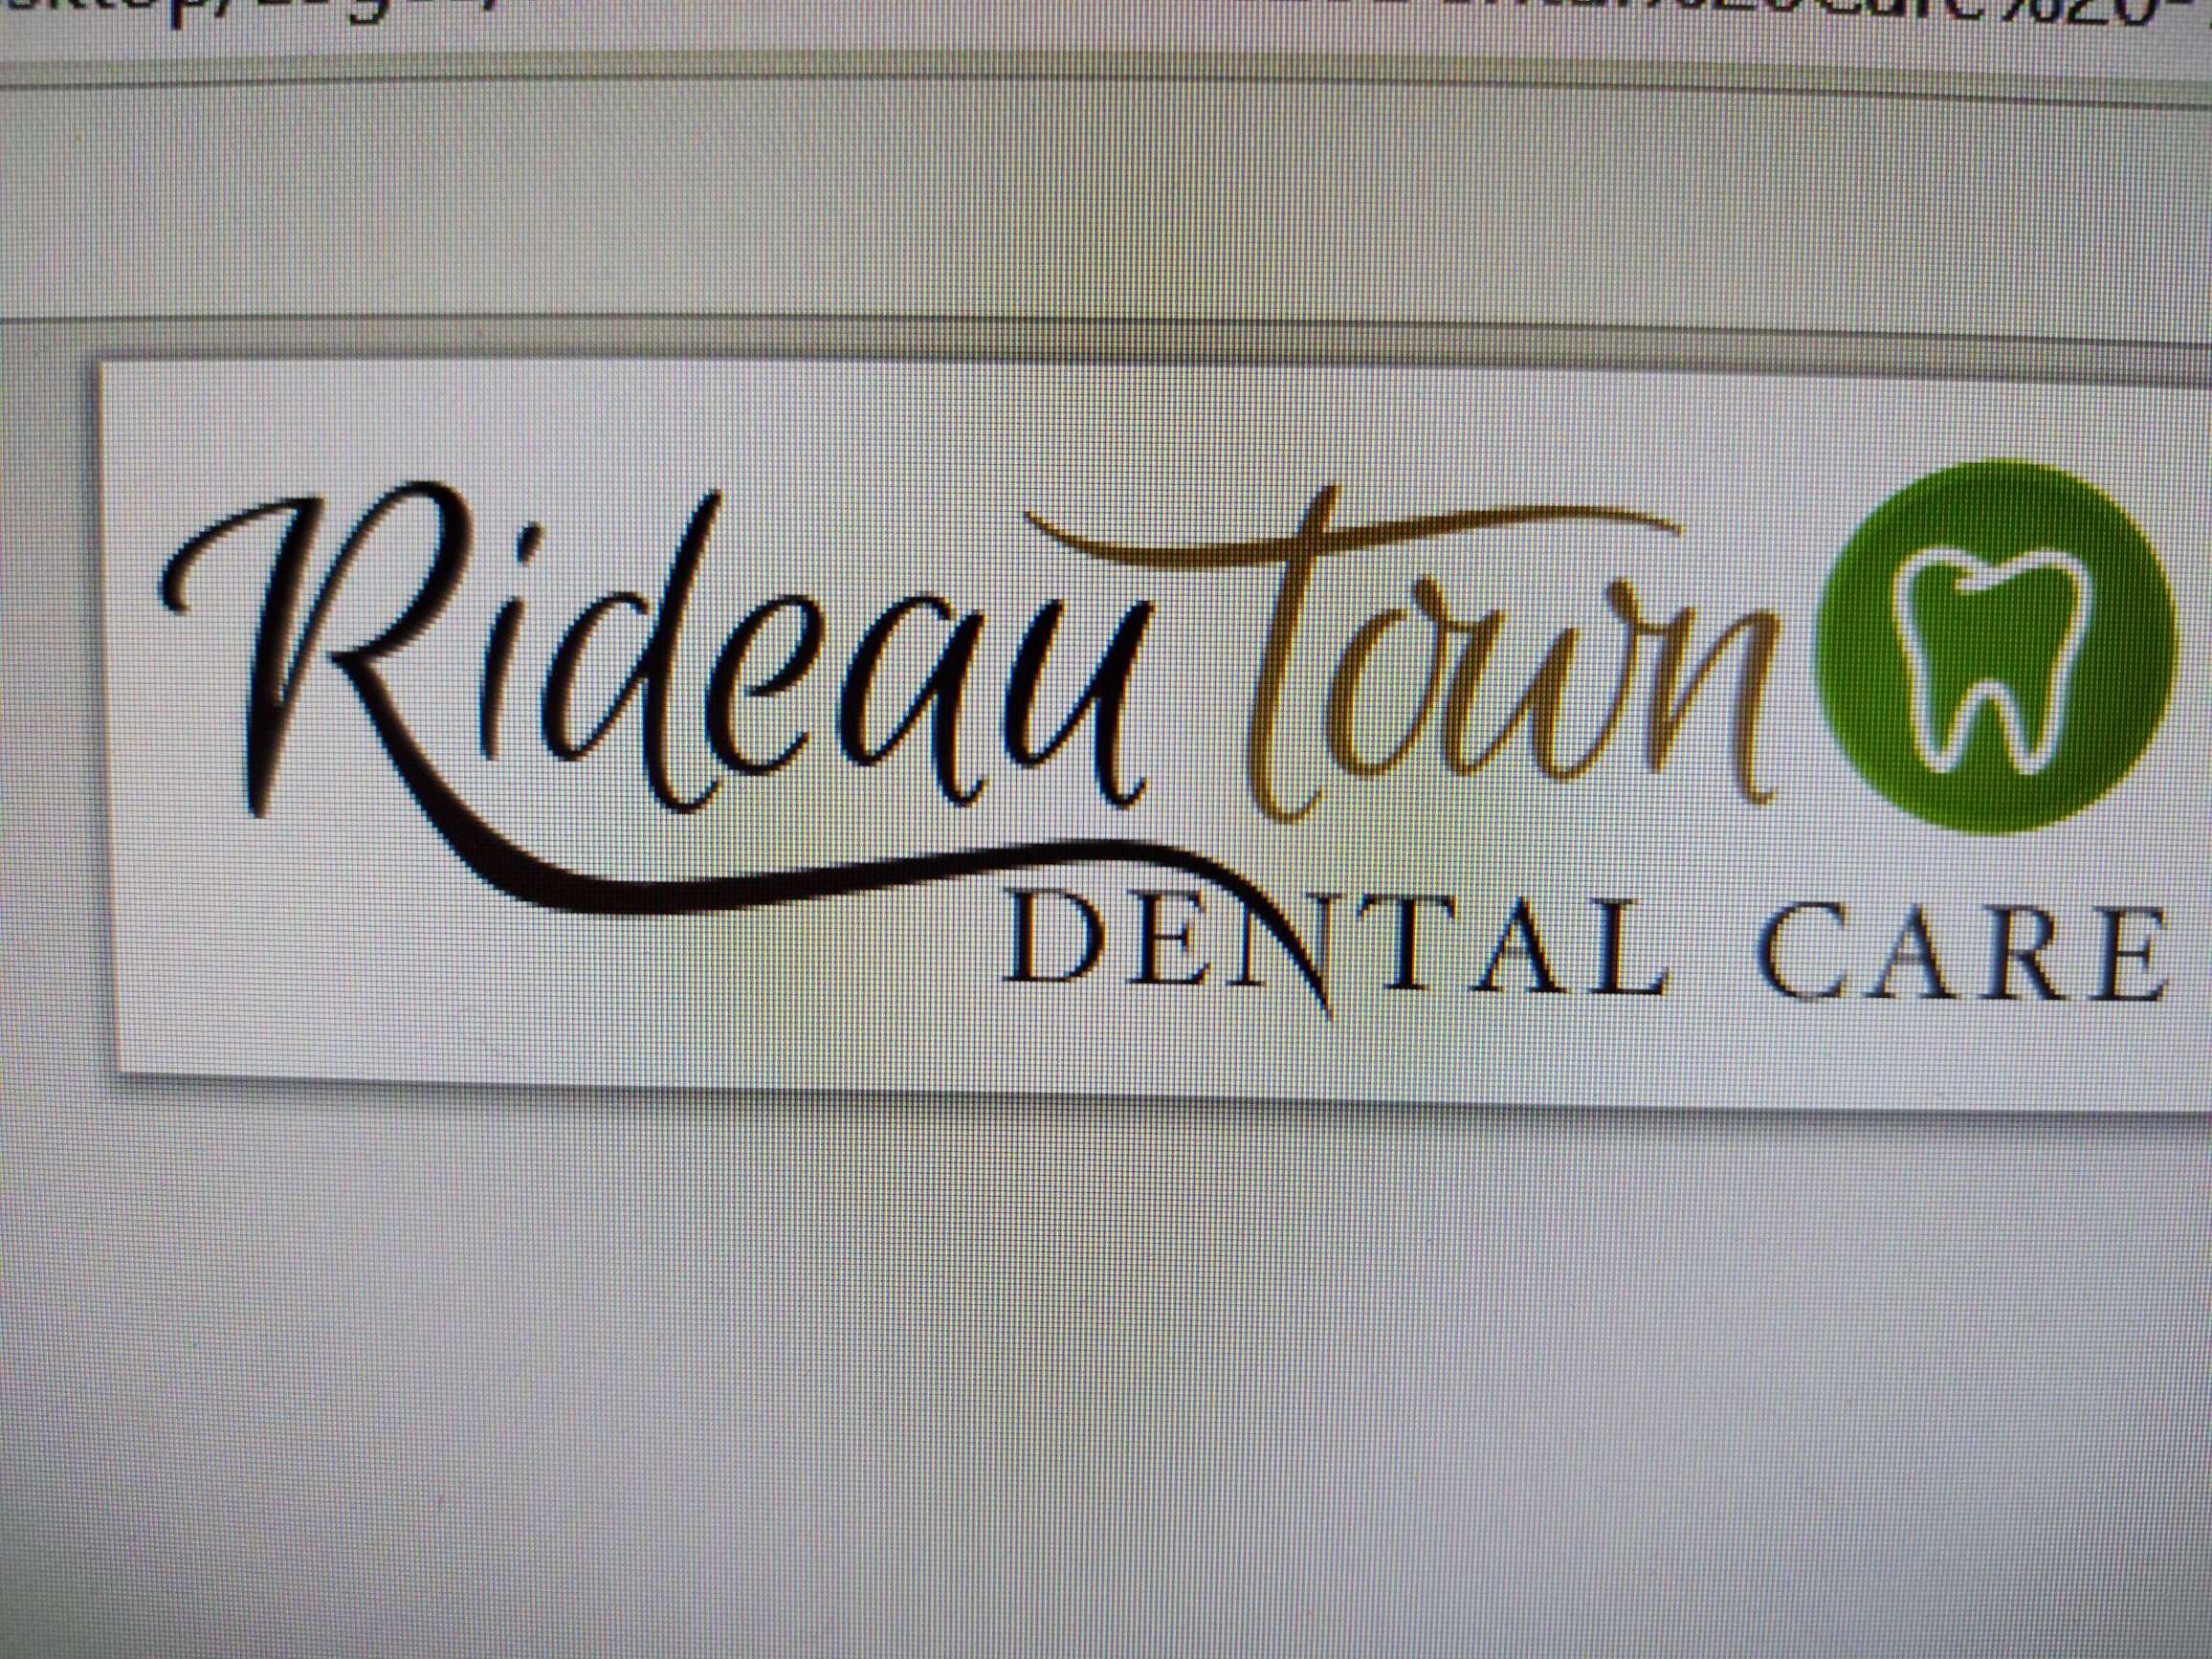 Rideau Town Dental Care